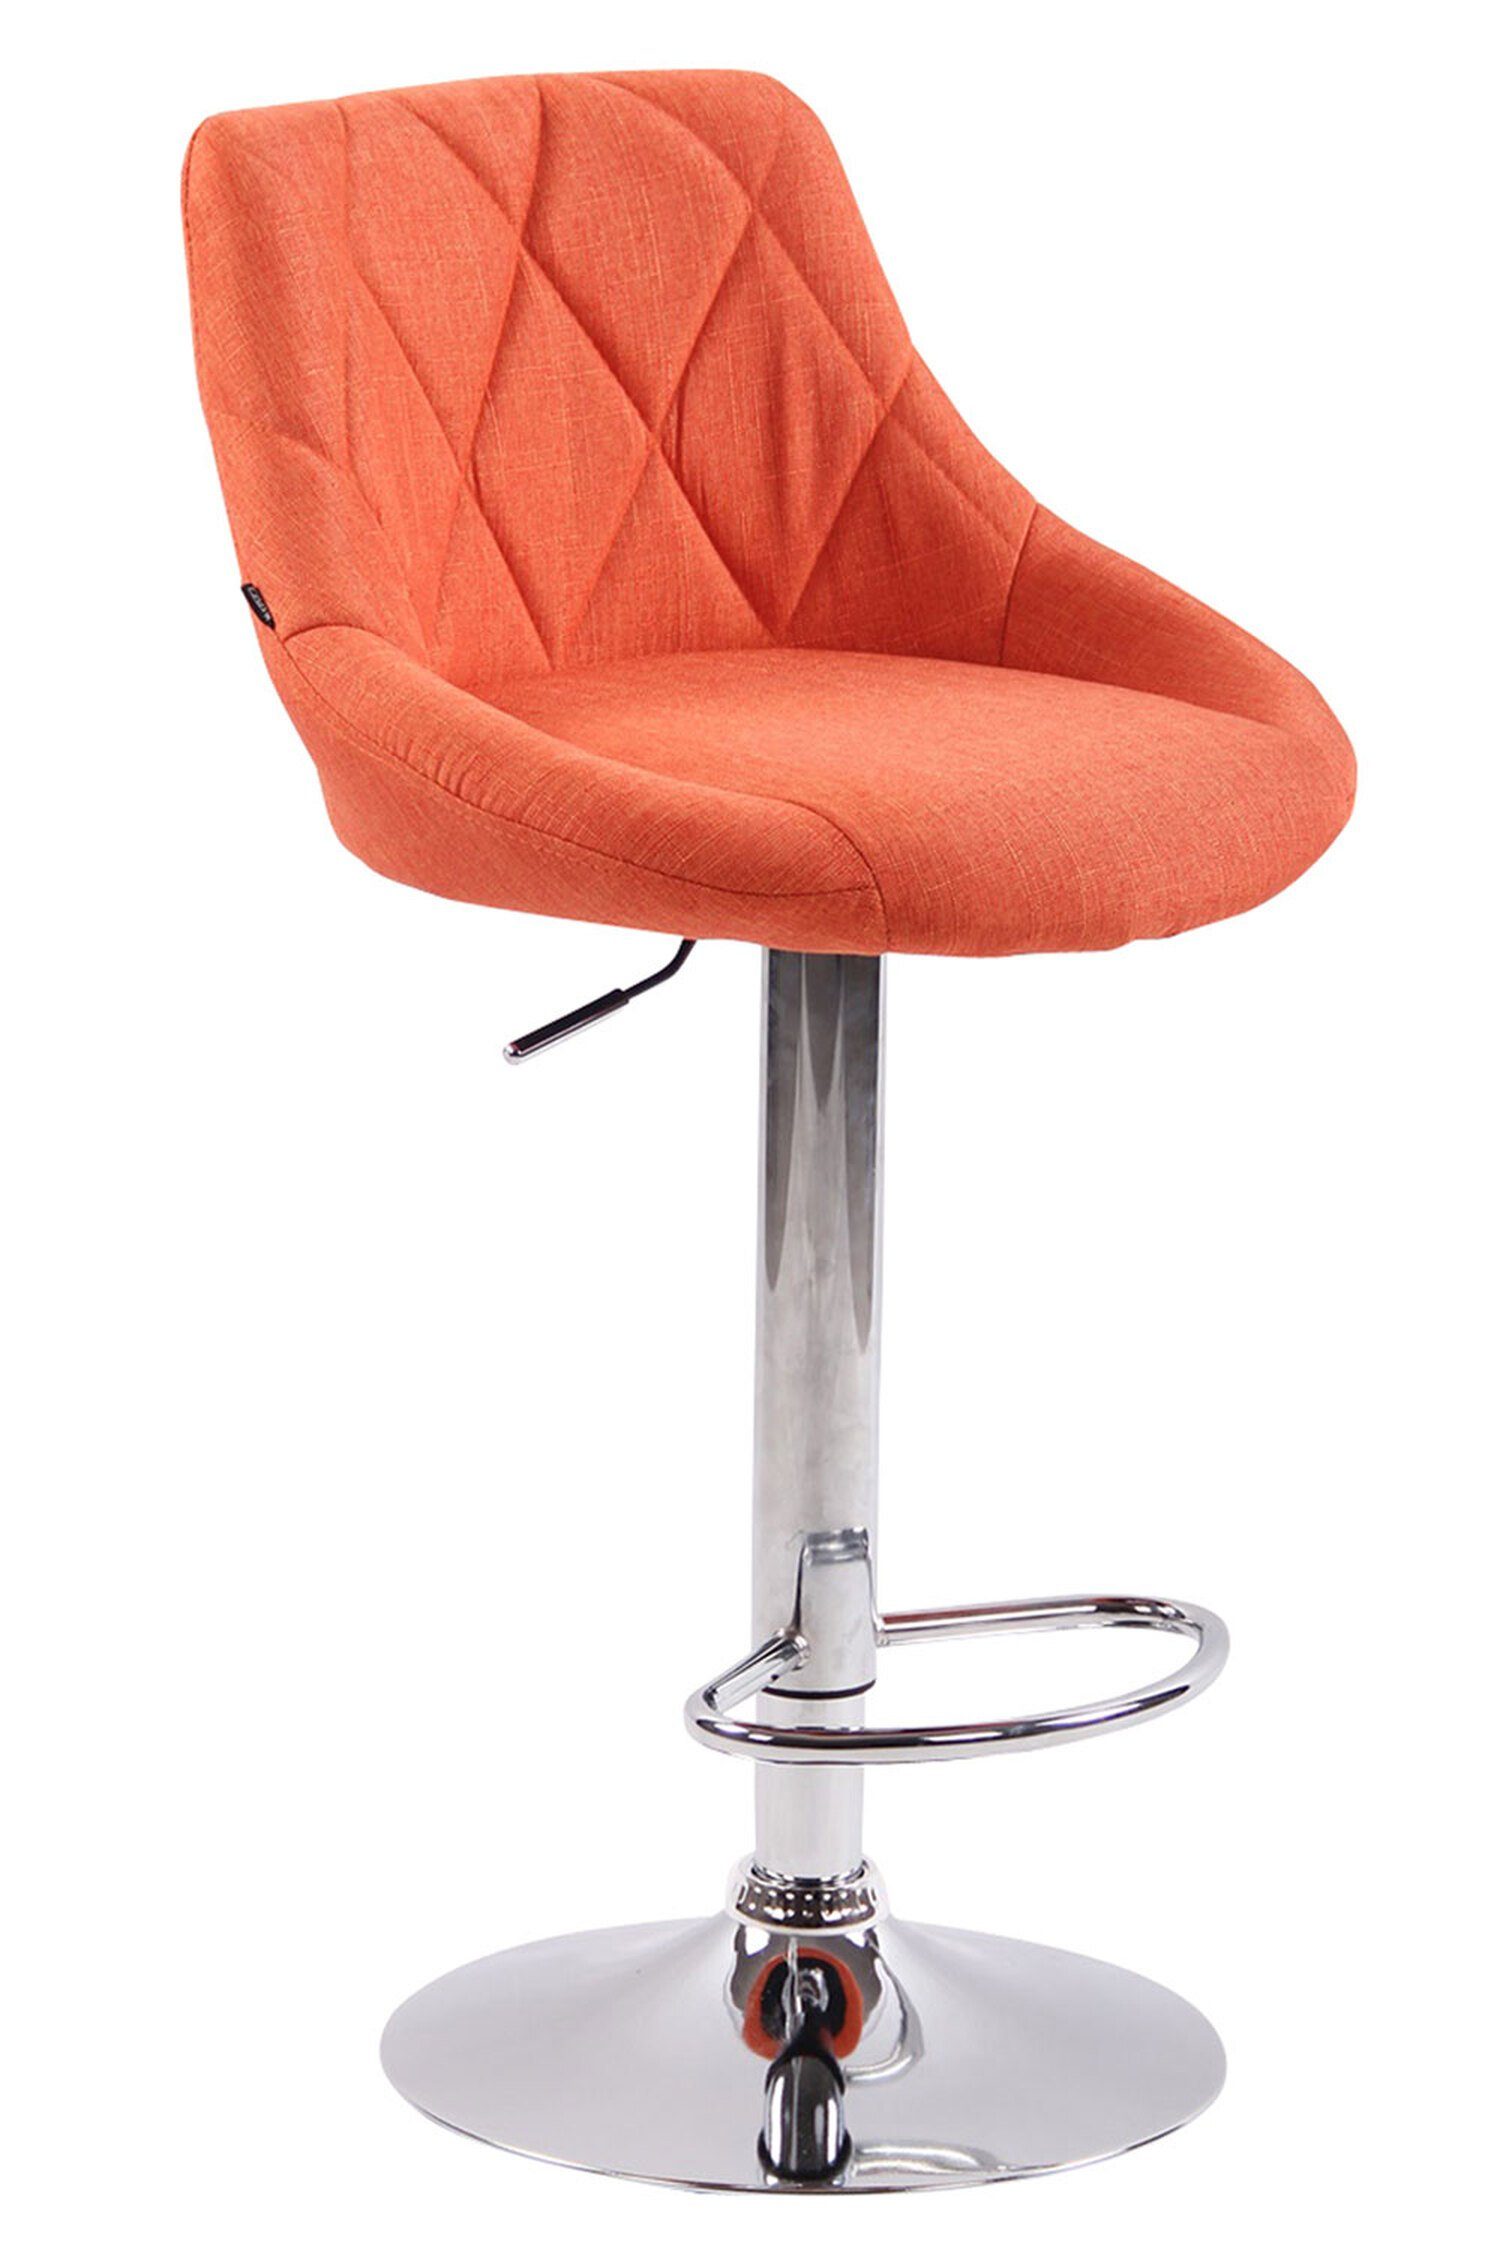 TPFLiving Barhocker Lazius, mit Rückenlehne und Fußstütze - Barstuhl höhenverstellbar - Hocker für Theke & Küche - Tresenhocker 360° drehbar - verchromter Stahl - Sitzfläche: Stoff Orange